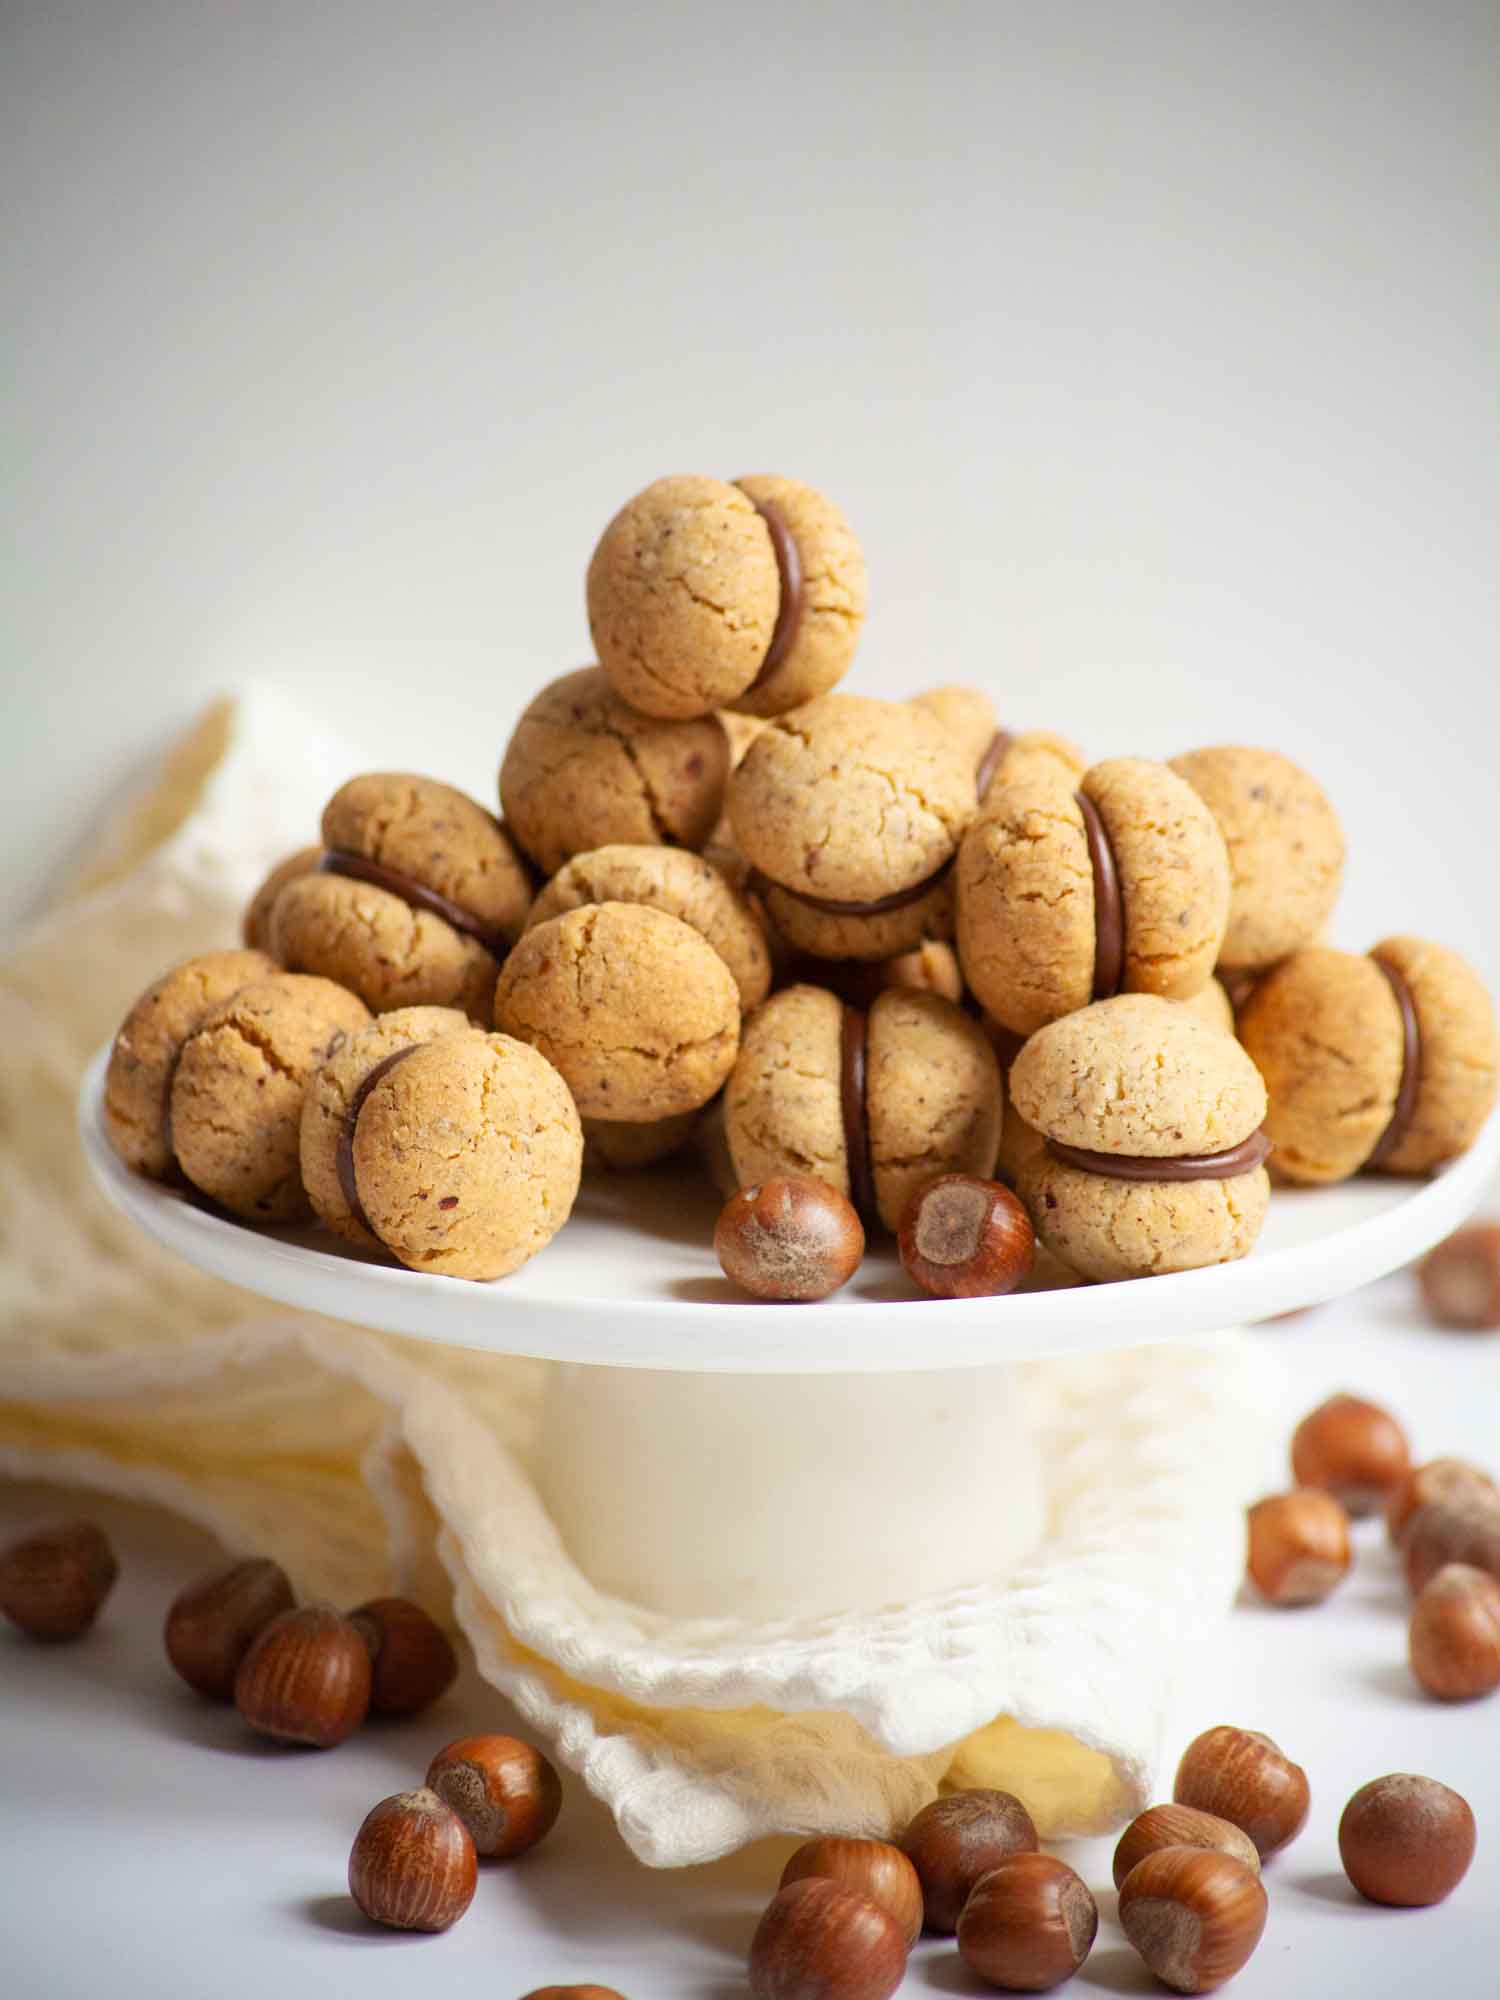 Baci di dama - Italian hazelnuts cookies